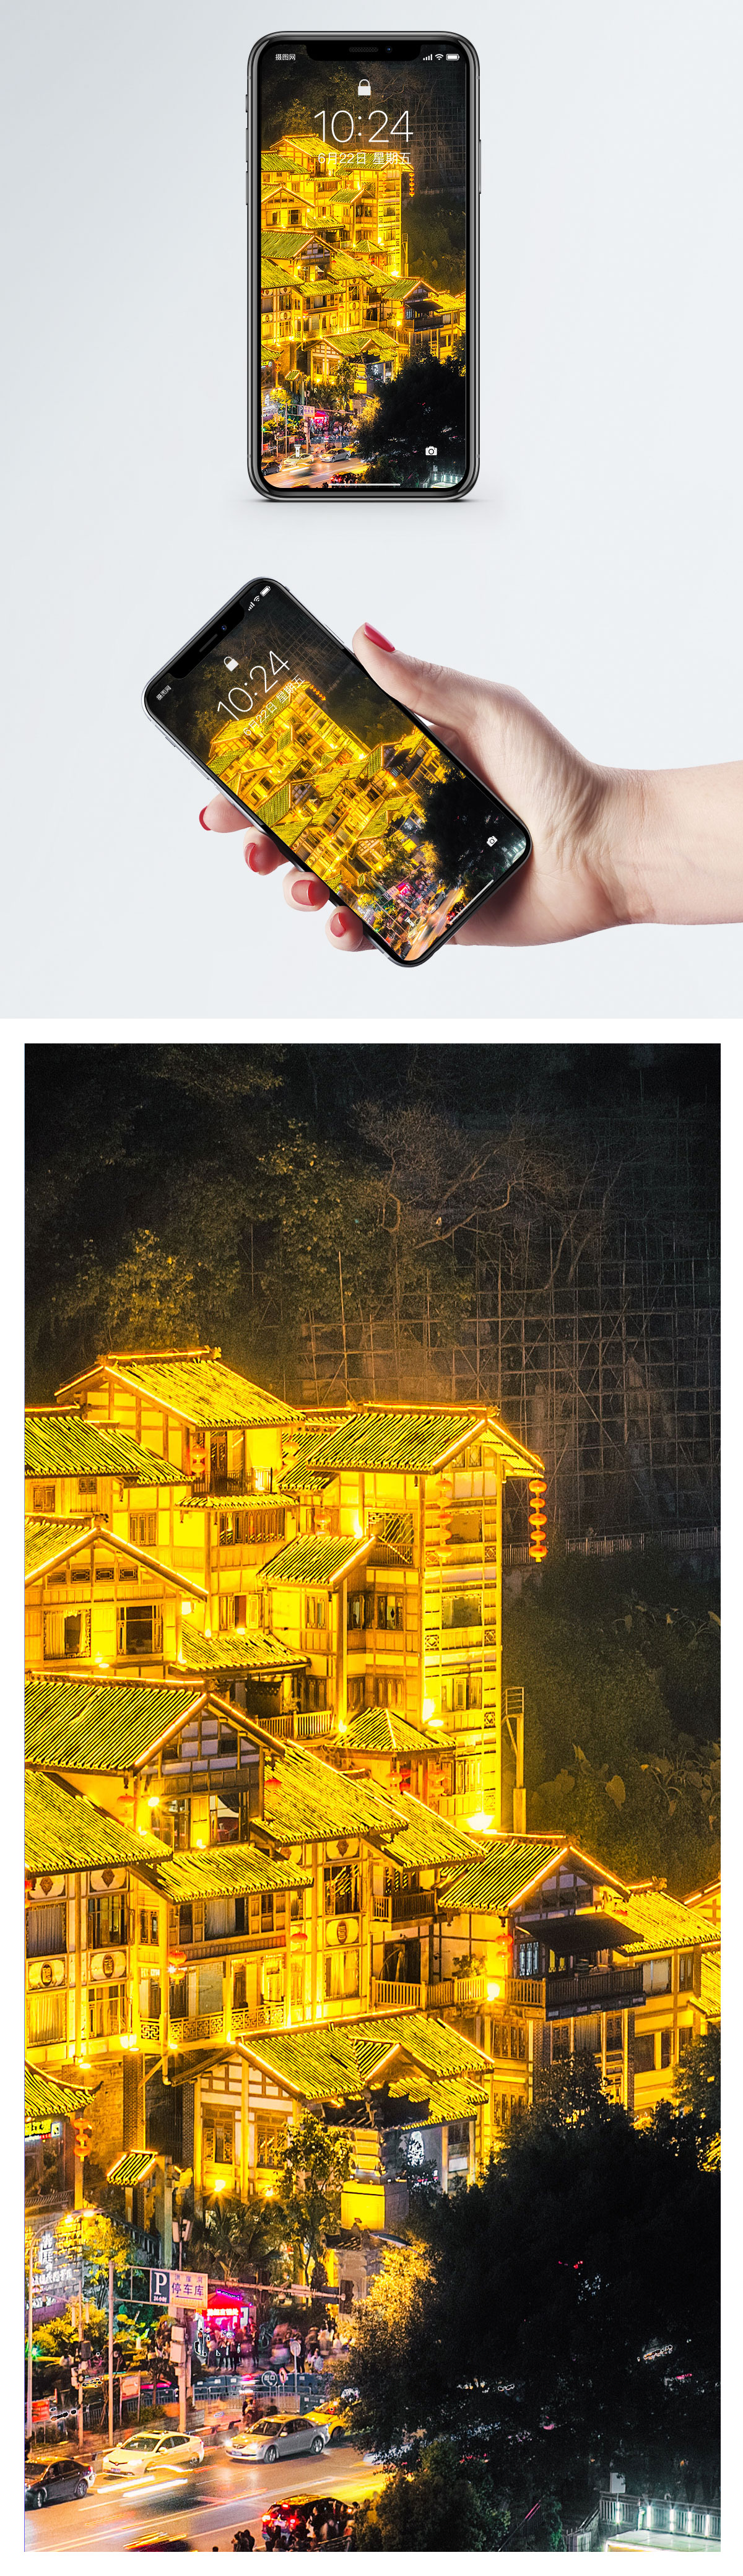 香港街景手機壁紙圖片素材 Jpg圖片尺寸86 300px 高清圖片 Zh Lovepik Com